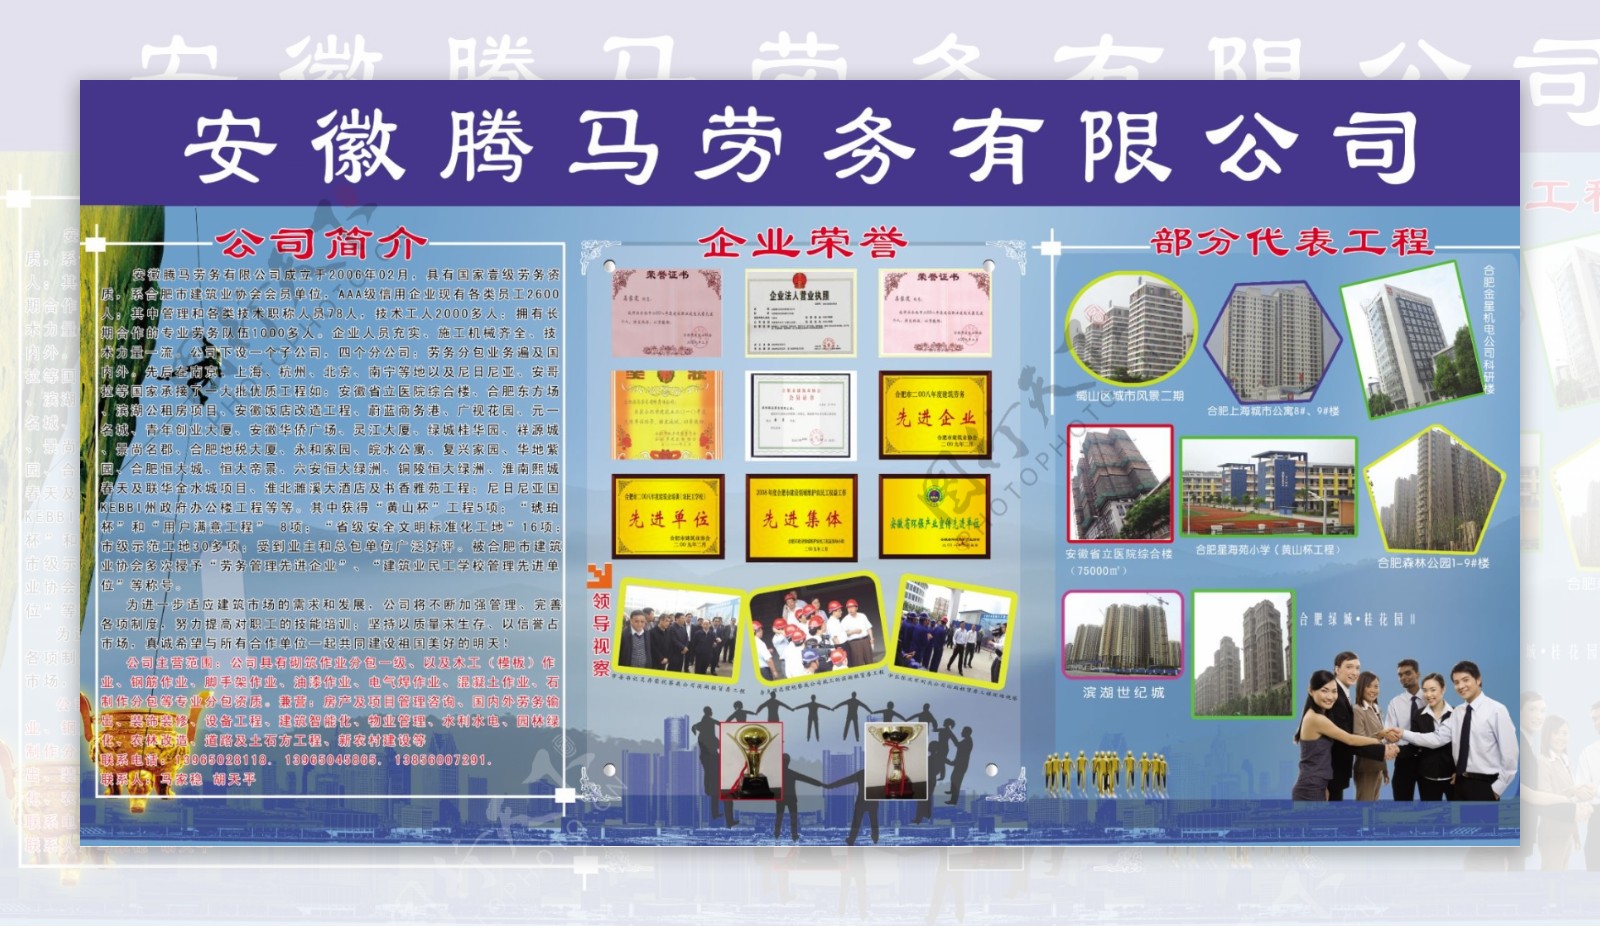 安徽腾马劳务公司展板图片